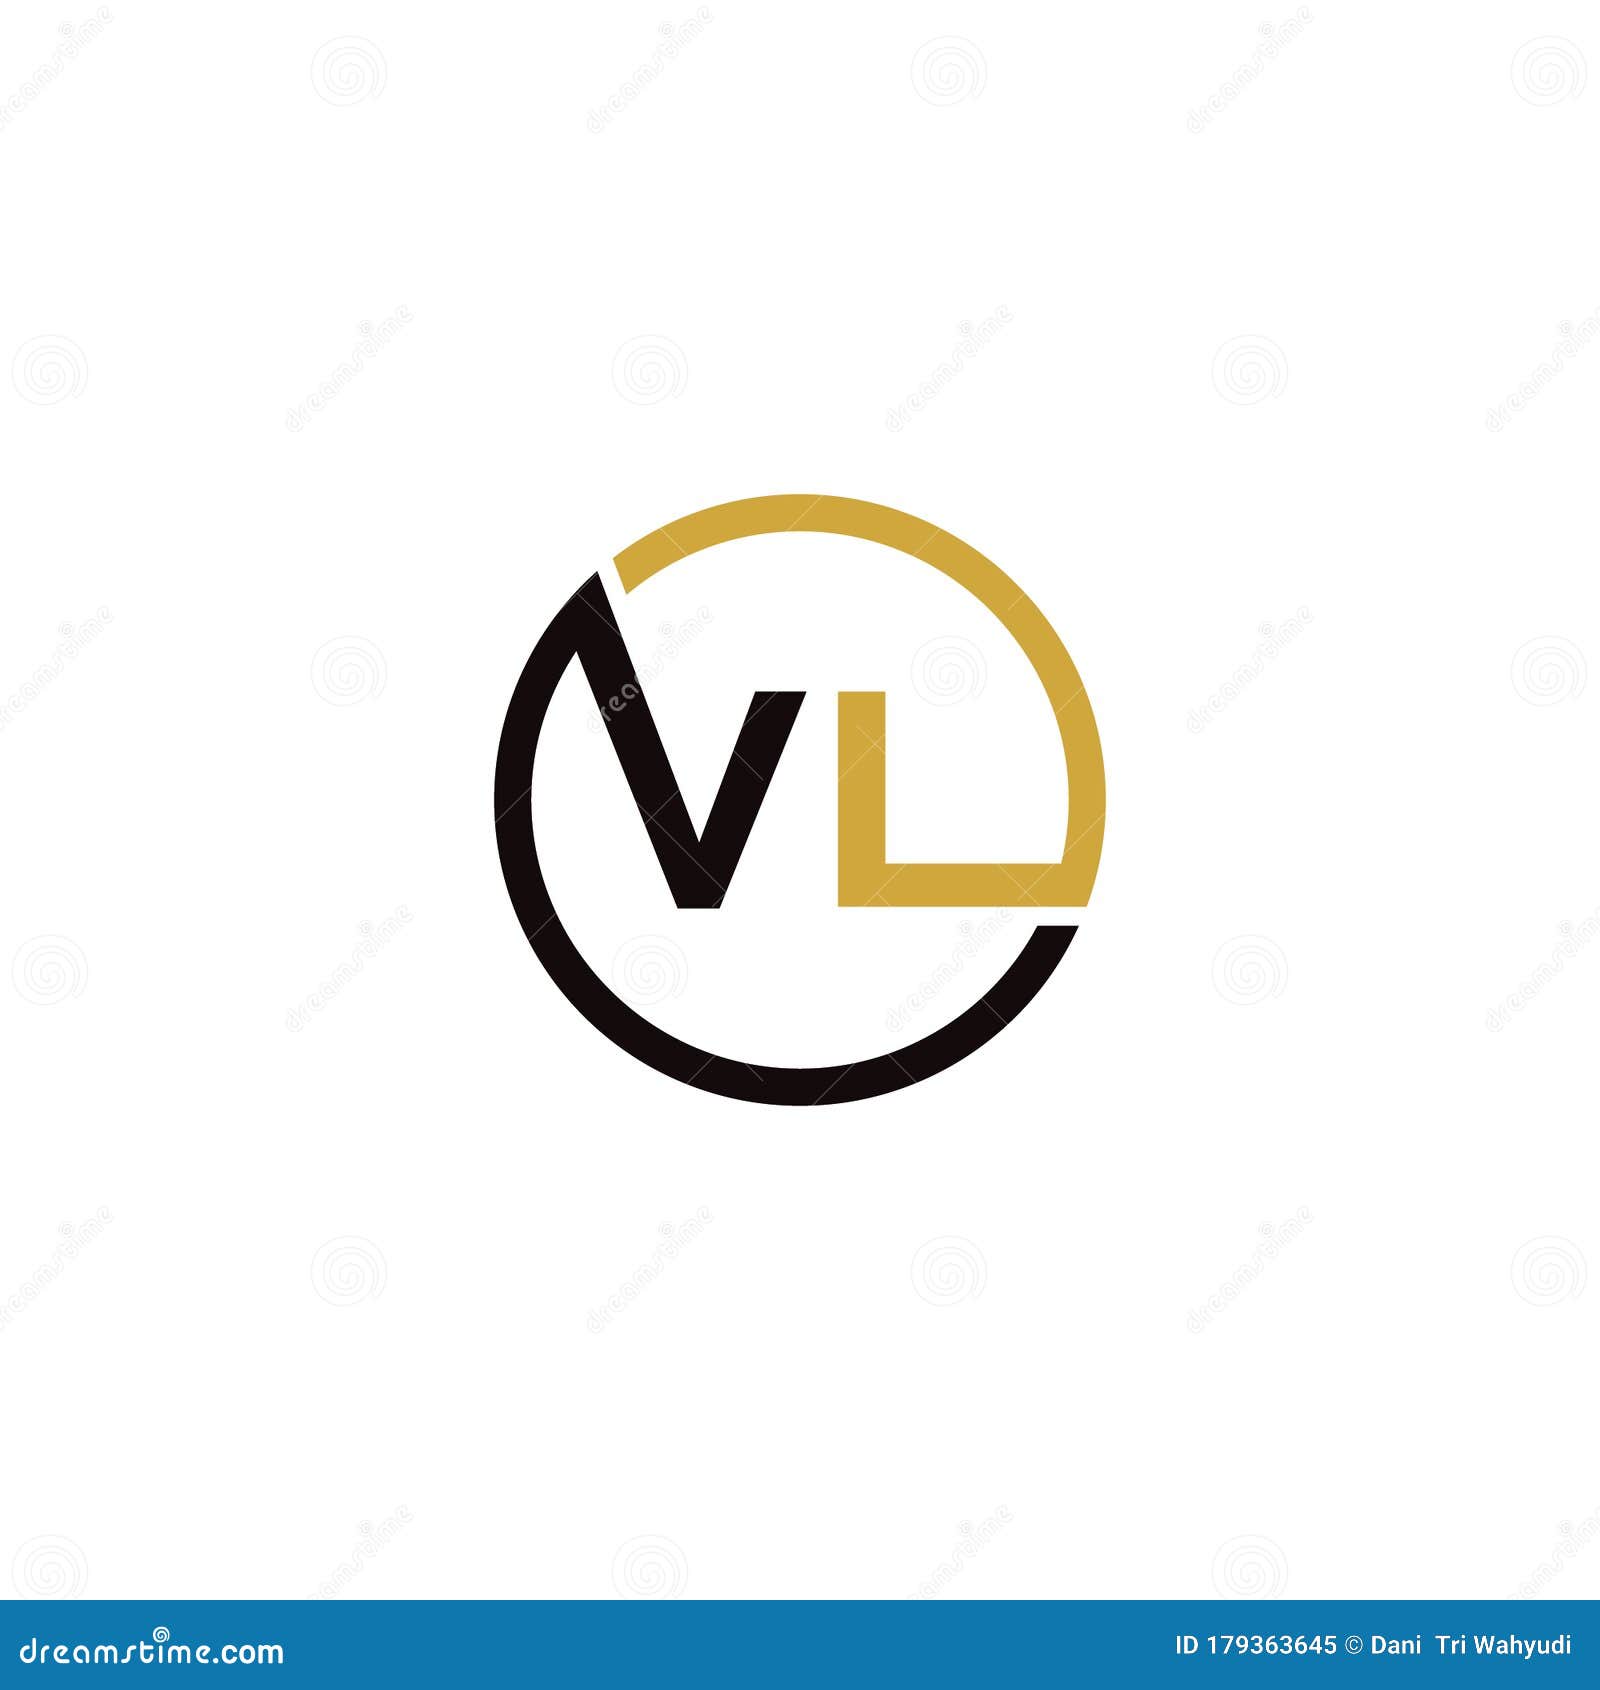 Golden Vl Monogram Isolated In White Stock Illustration - Download